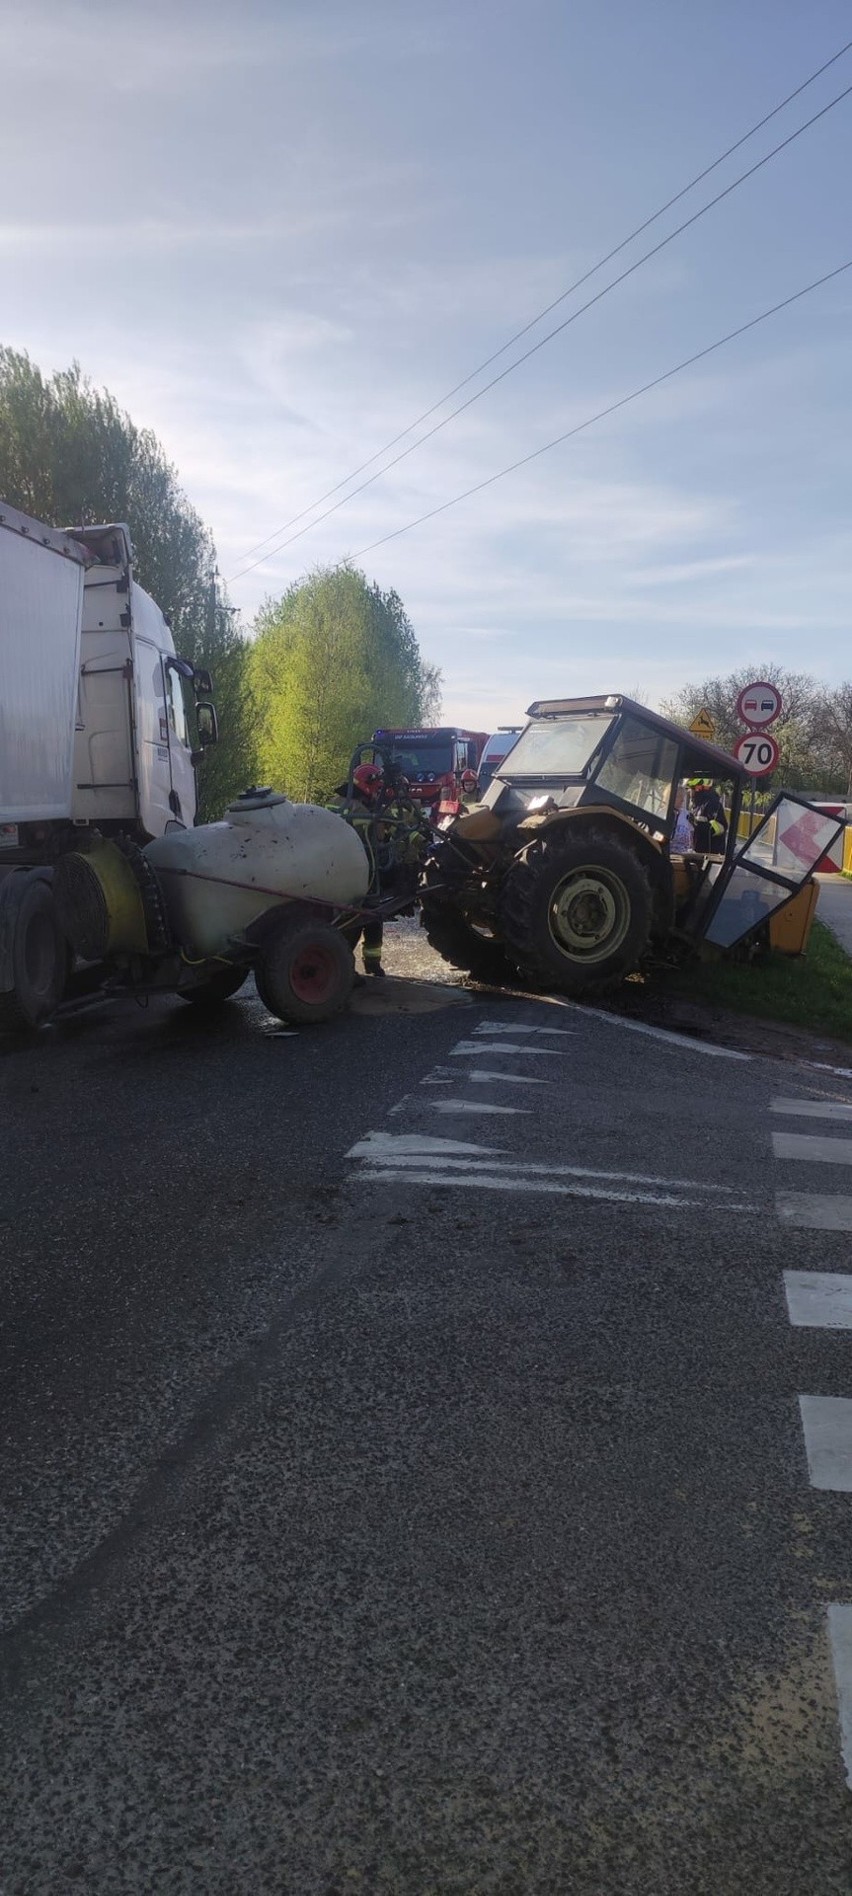 Wypadek na drodze krajowej w Sulisławicach. Zderzyły się ciągnik rolniczy i ciężarówka